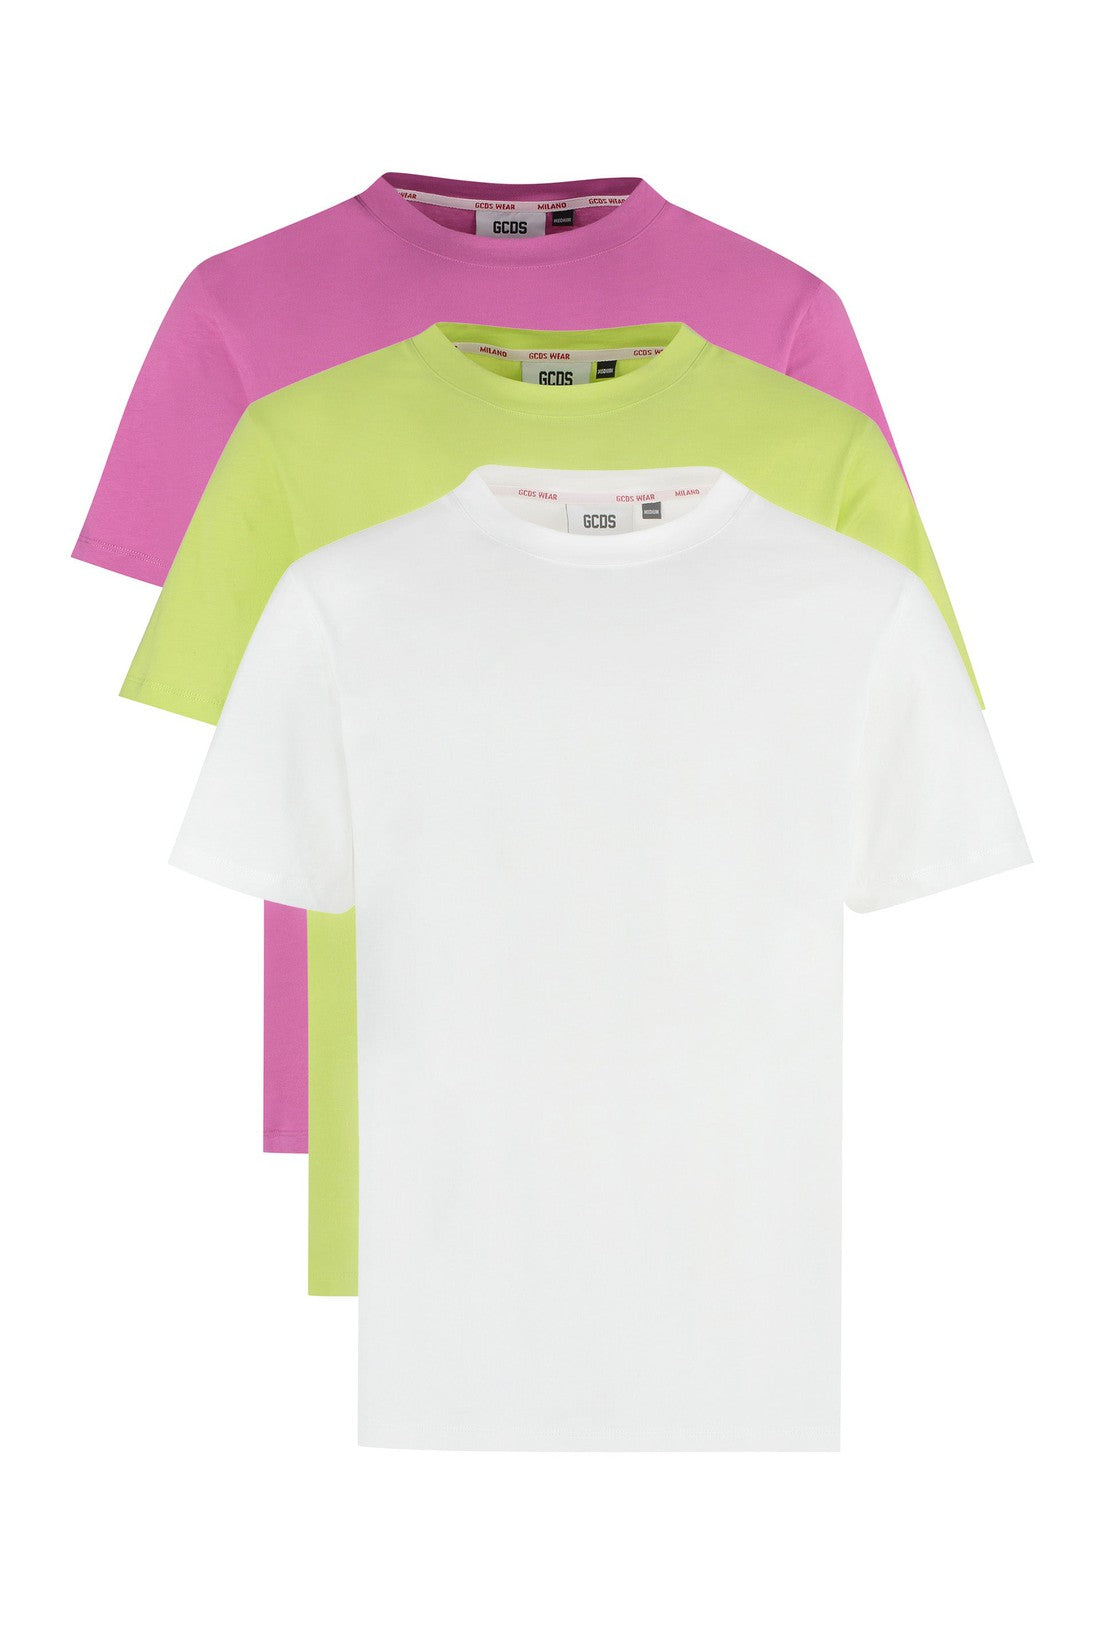 GCDS-OUTLET-SALE-Set of three cotton t-shirts-ARCHIVIST